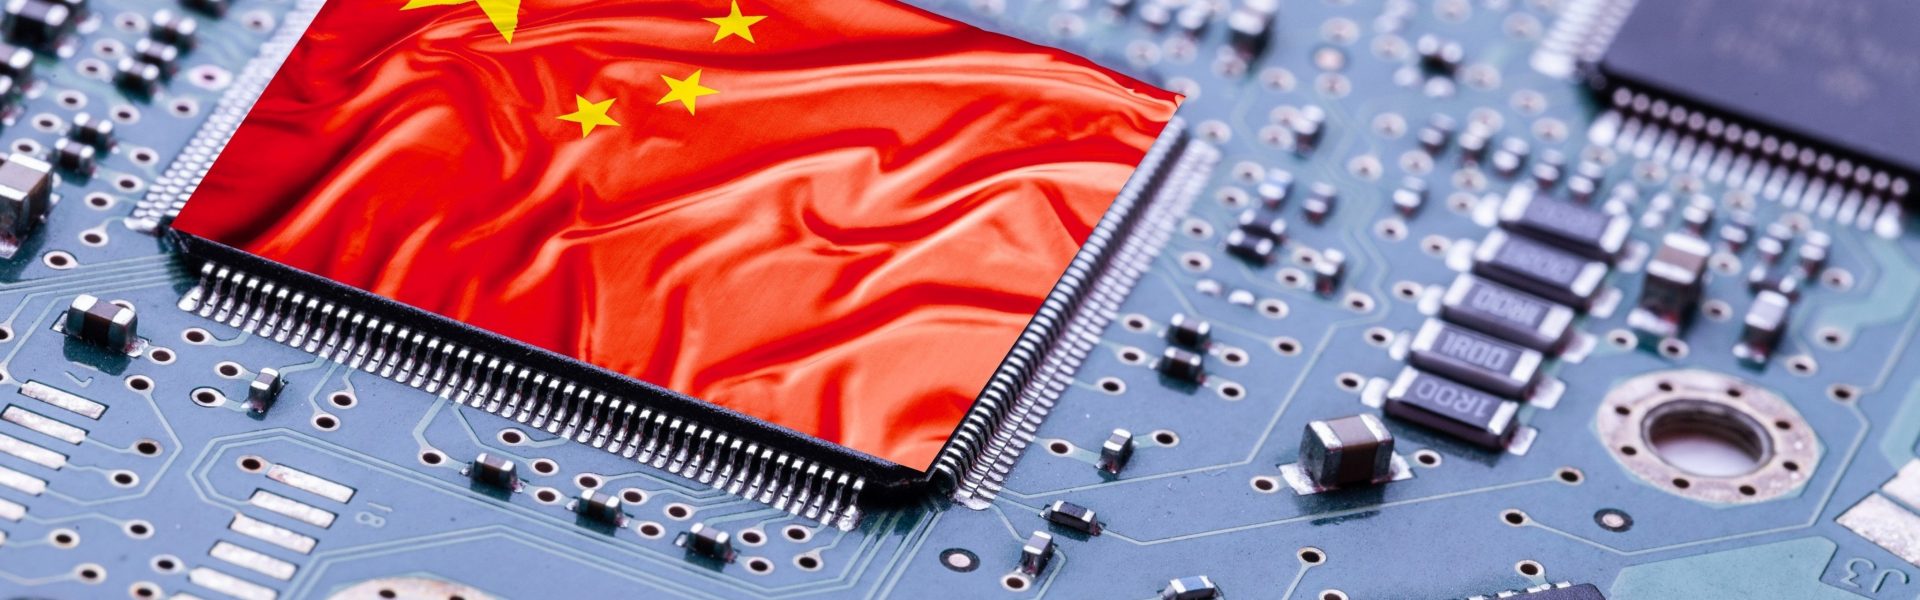 China avanza en el desarrollo de chips para inteligencia artificial